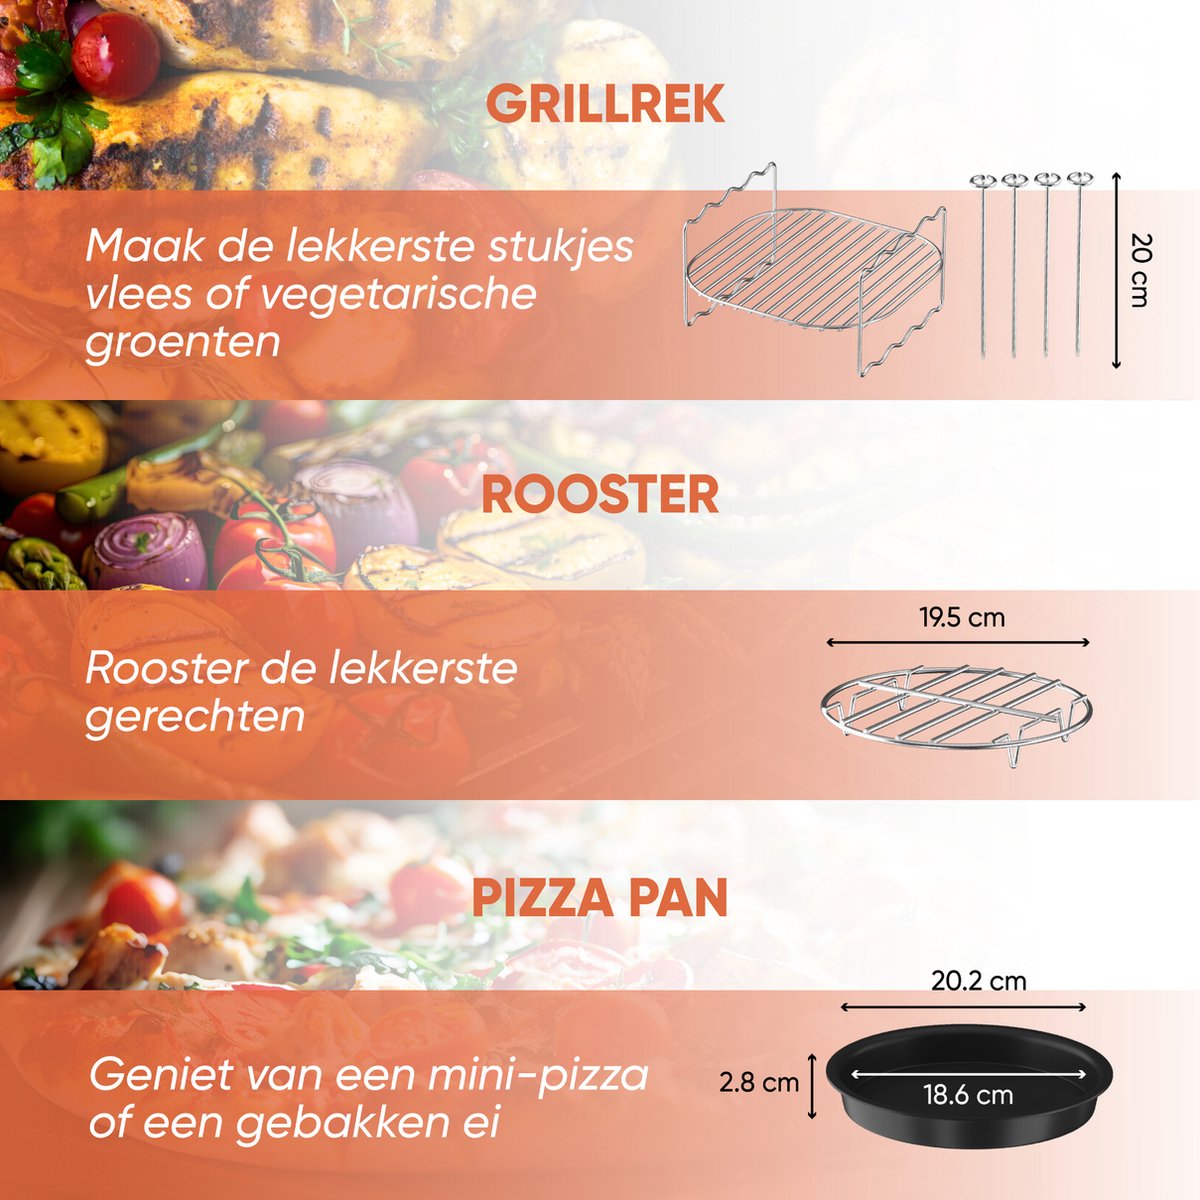 UNBOX Set d'accessoires pour friteuse à air chaud double – Convient pour  les friteuses